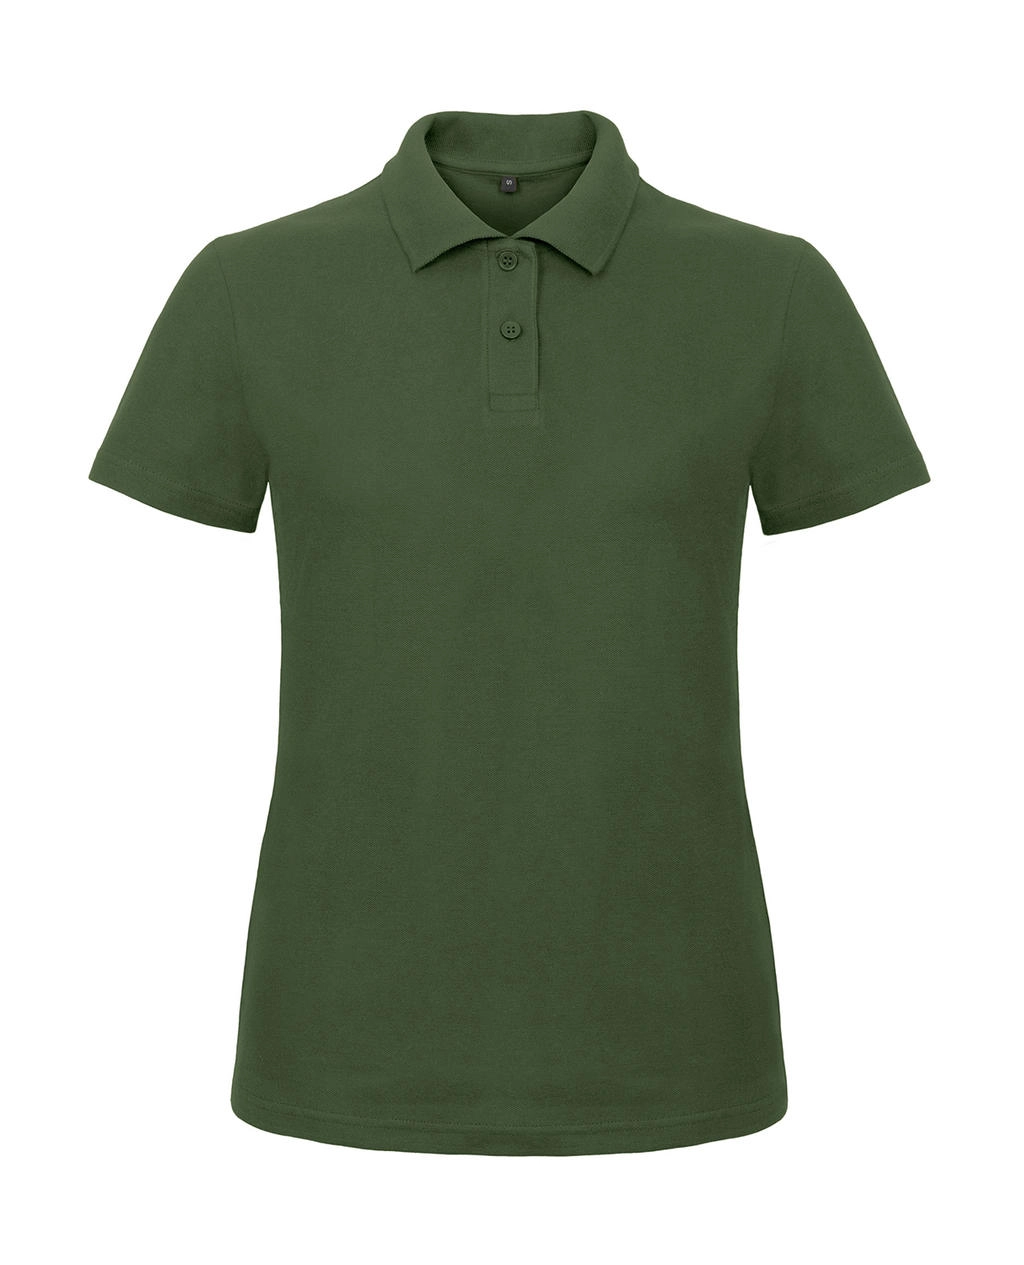 ID.001/women Piqué Polo Shirt zum Besticken und Bedrucken in der Farbe Bottle Green mit Ihren Logo, Schriftzug oder Motiv.